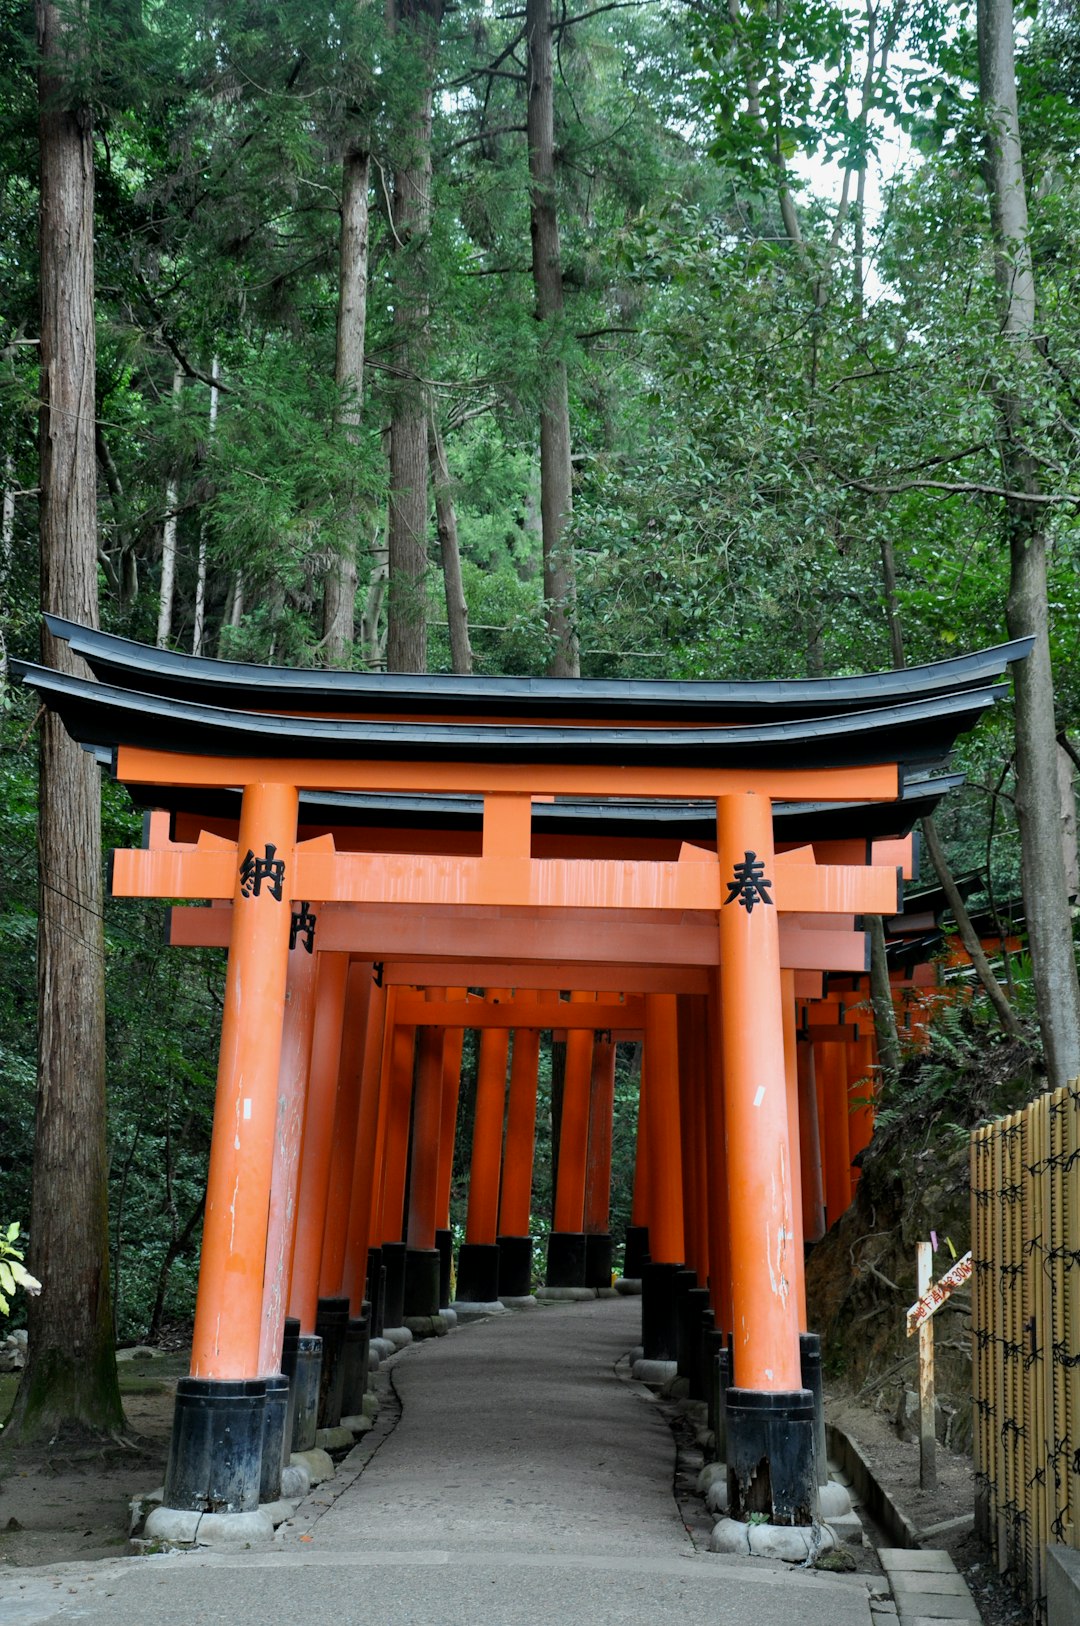 Place of worship photo spot Fushimi Inari Taisha Gion